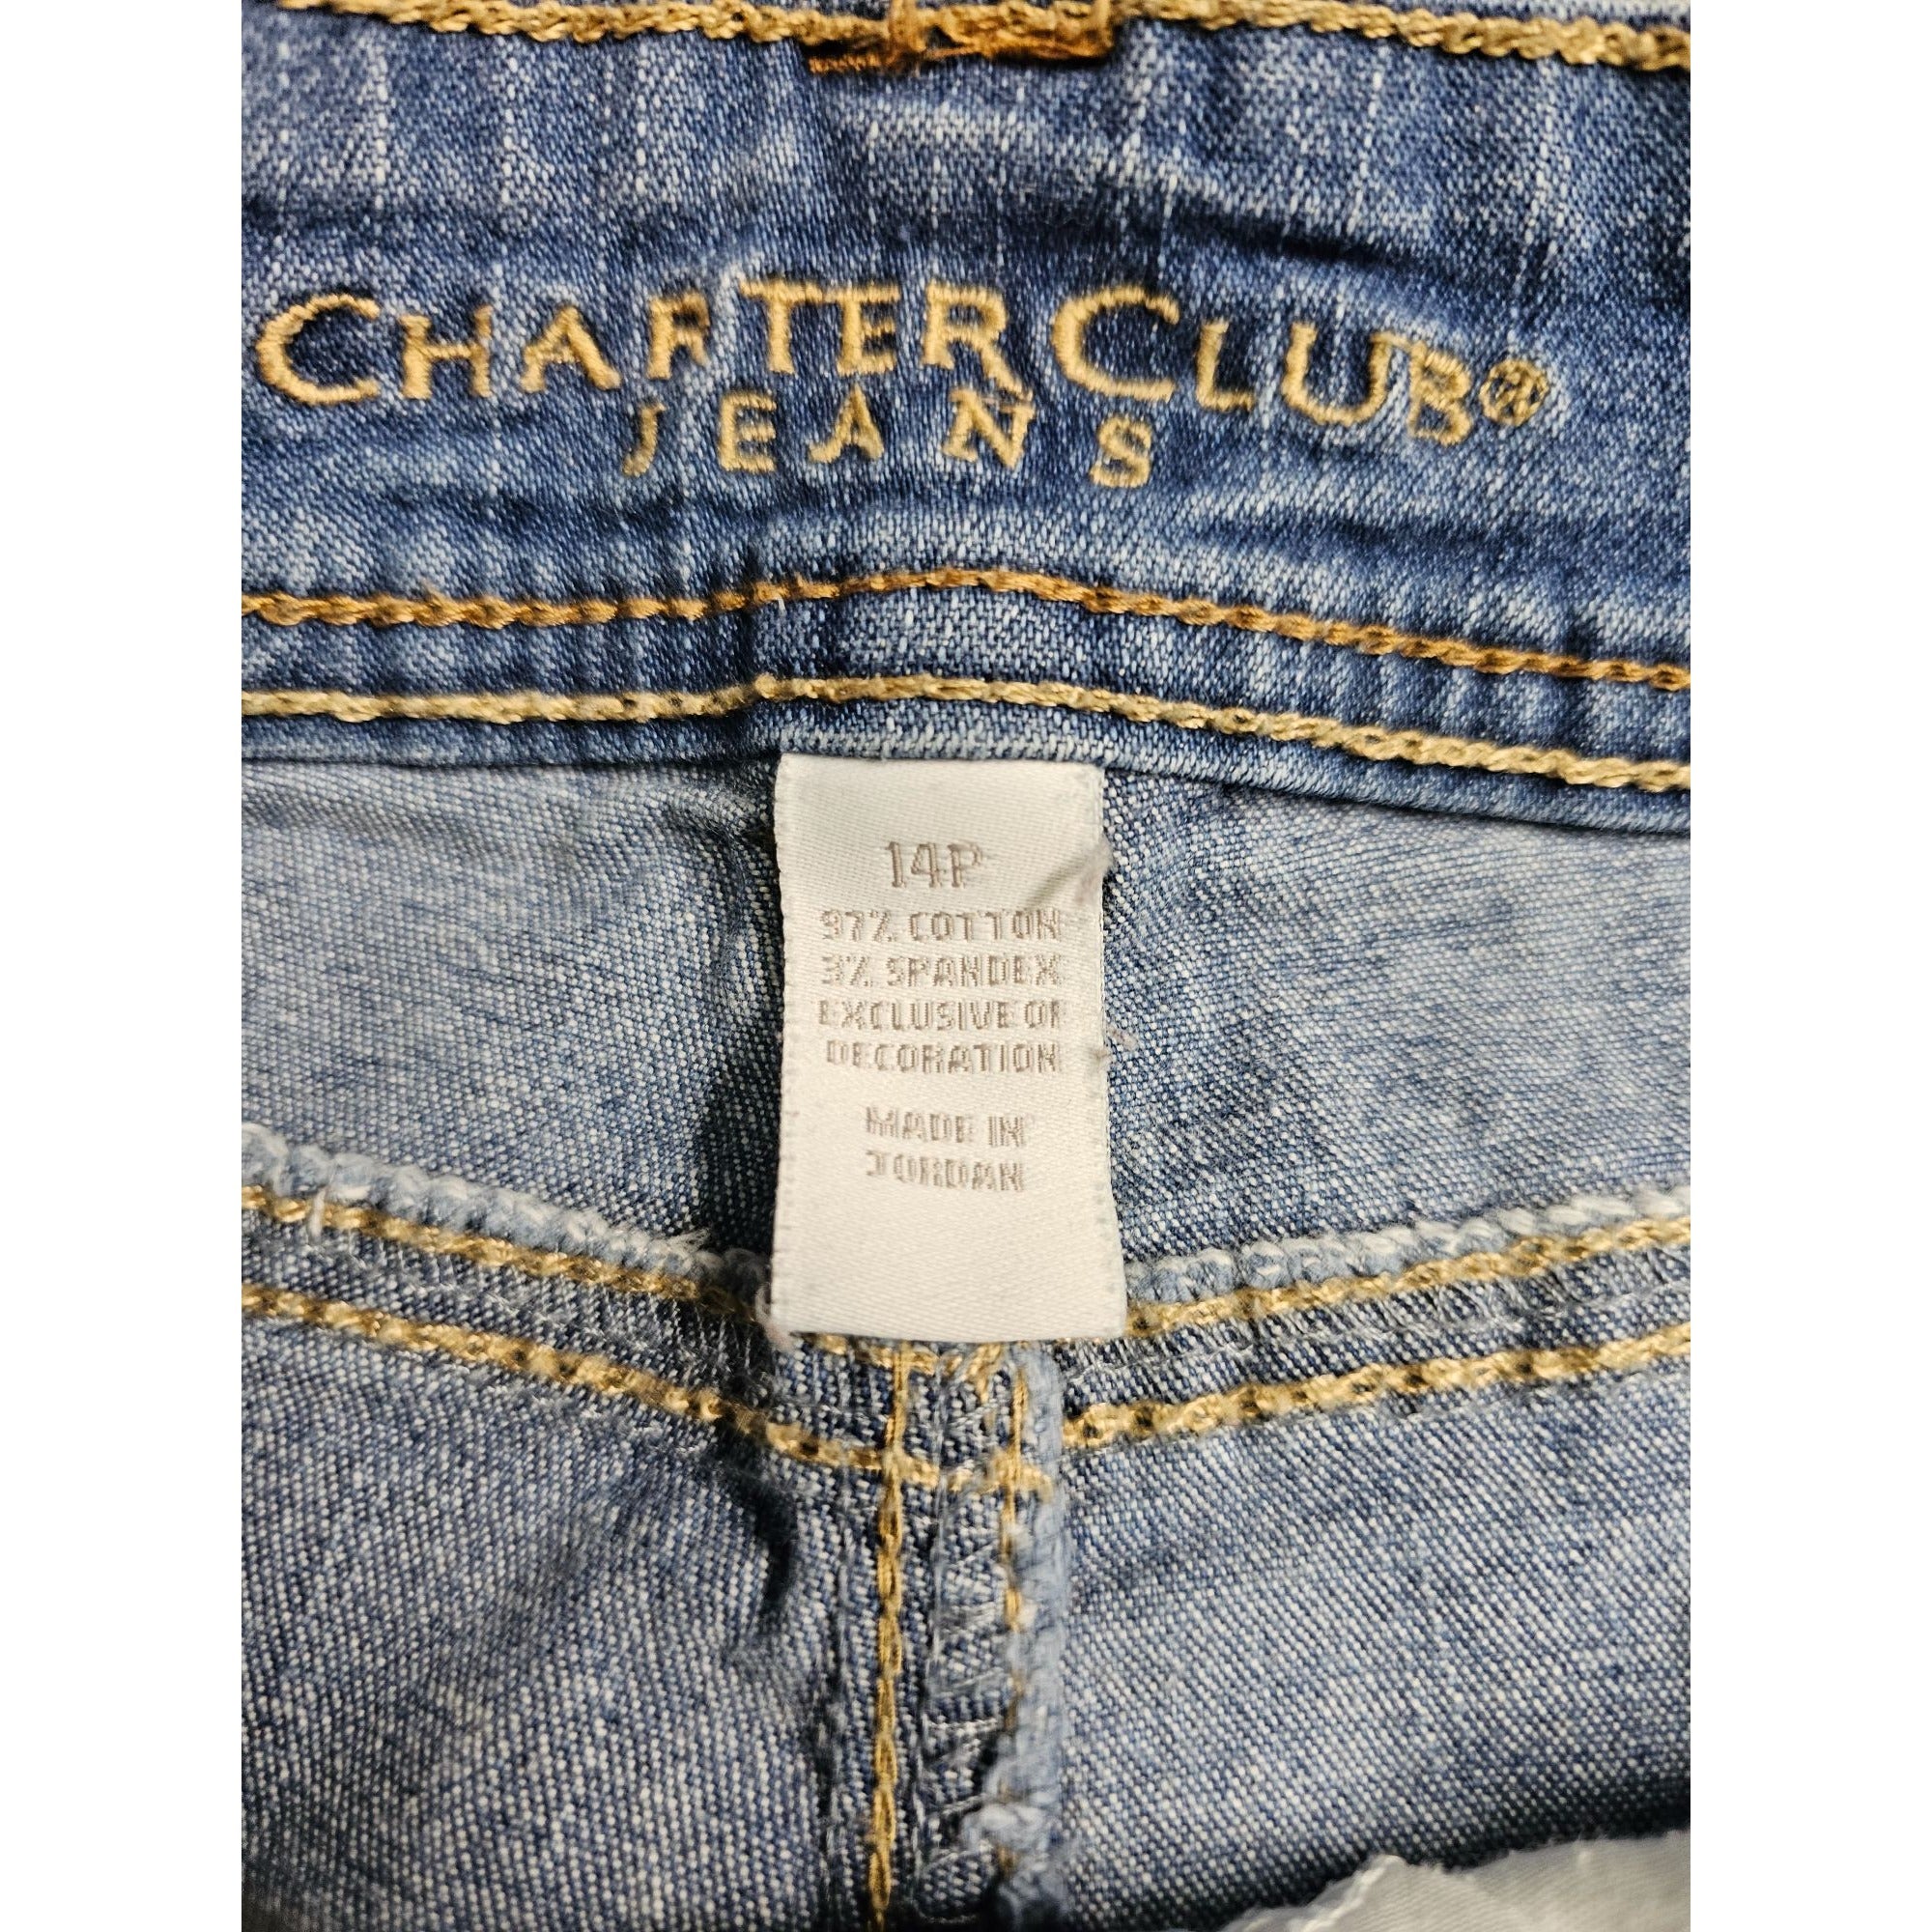 Charter Club Size 14 Petite Sculping Stretch 10in Waist Rise Women's Capri Jeans